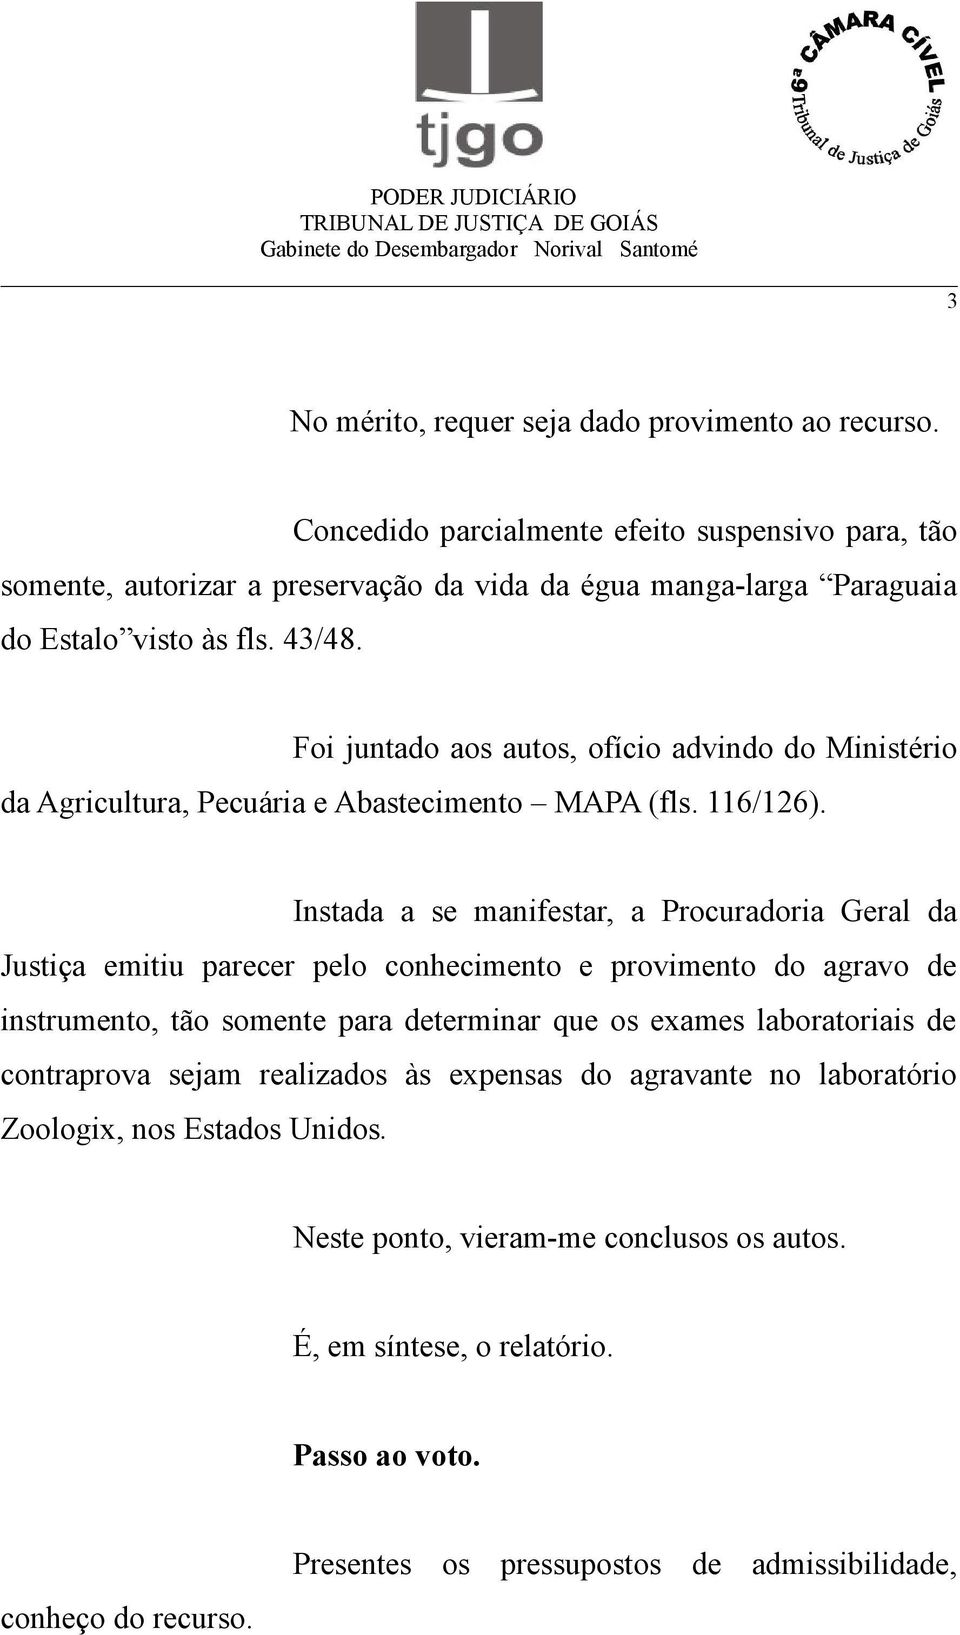 Foi juntado aos autos, ofício advindo do Ministério da Agricultura, Pecuária e Abastecimento MAPA (fls. 116/126).